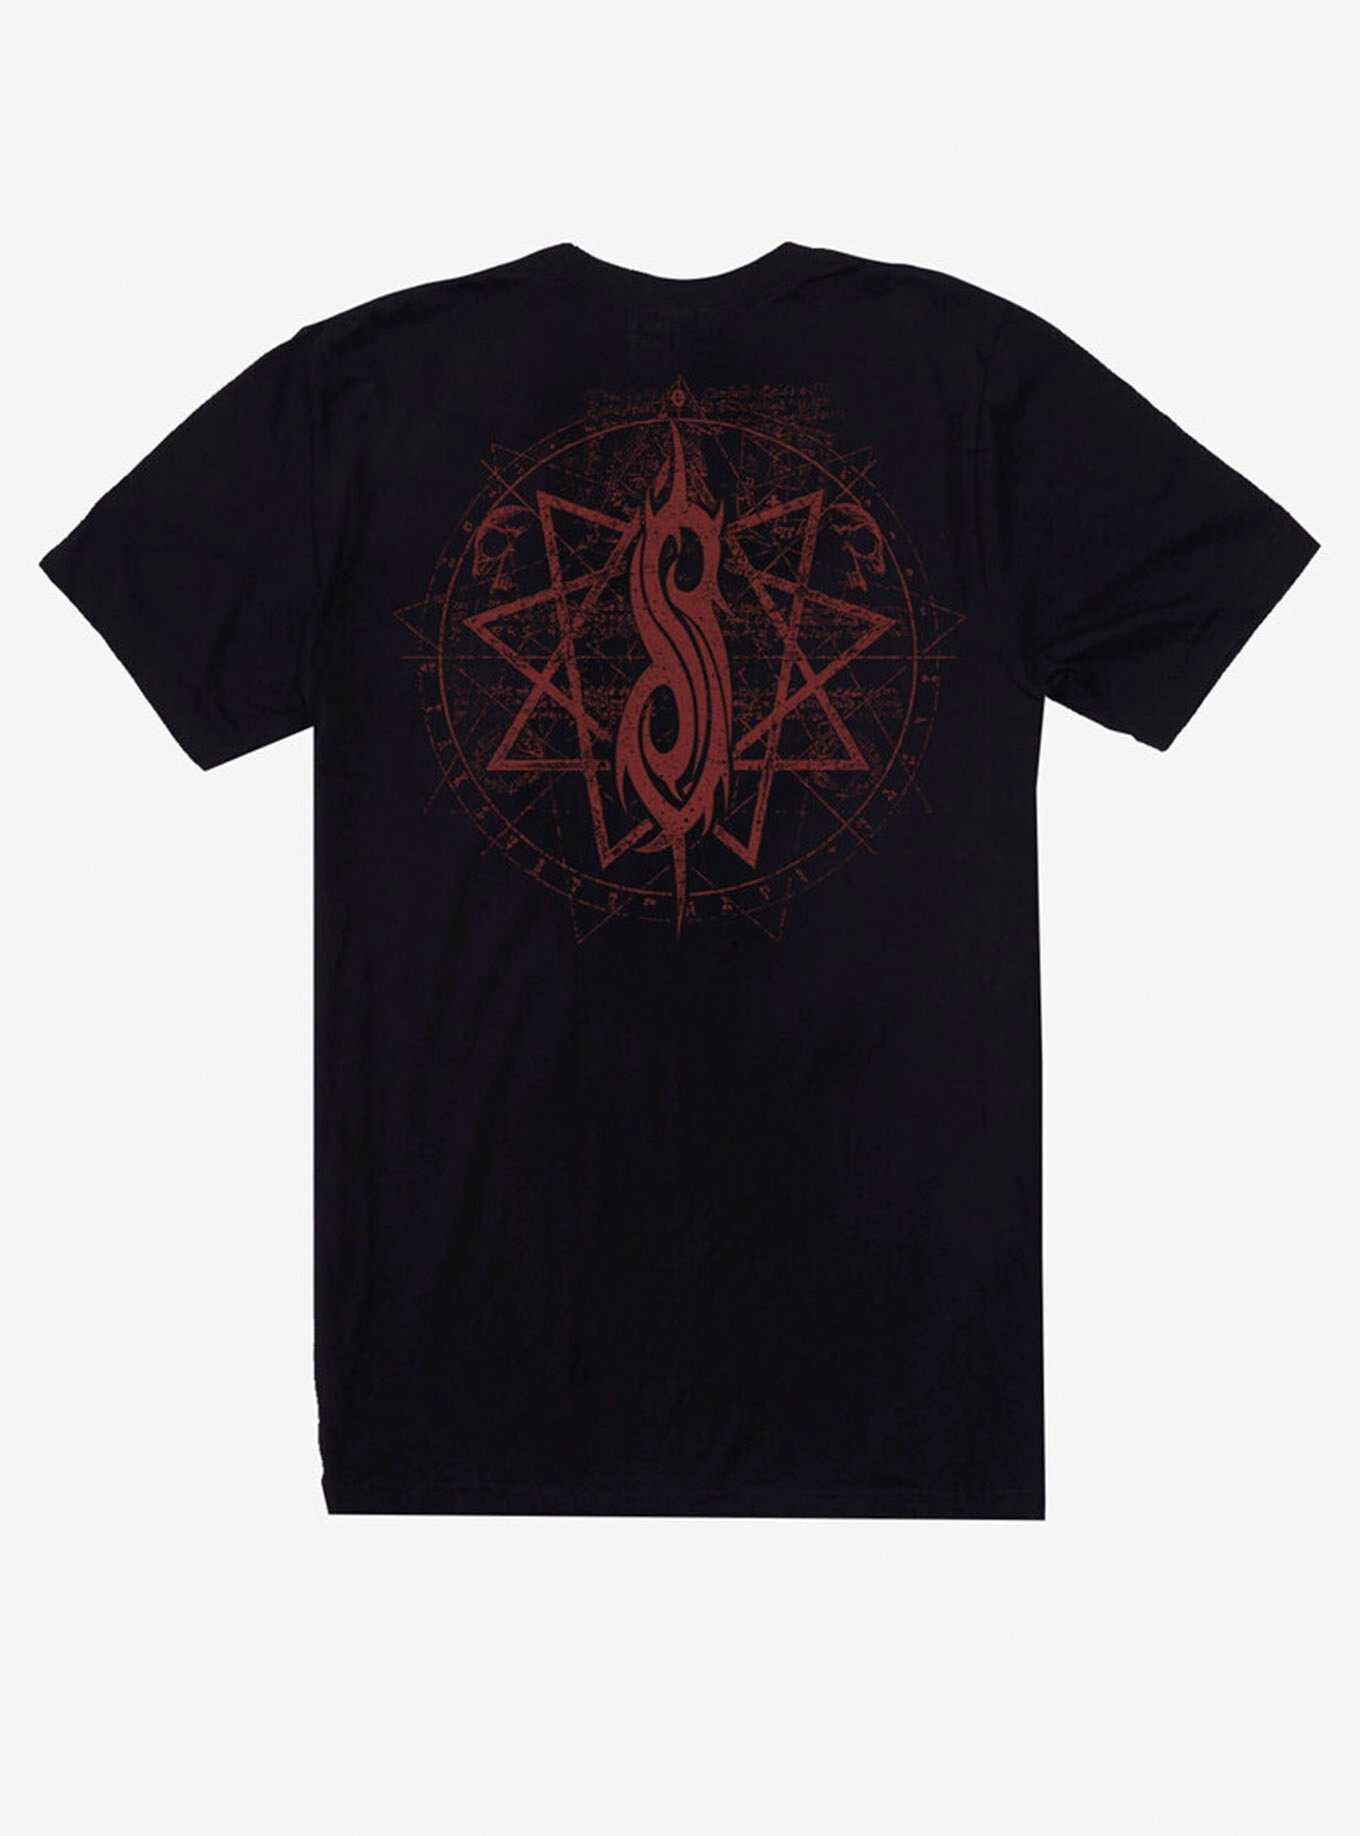 Slipknot Reaper T-Shirt, , hi-res